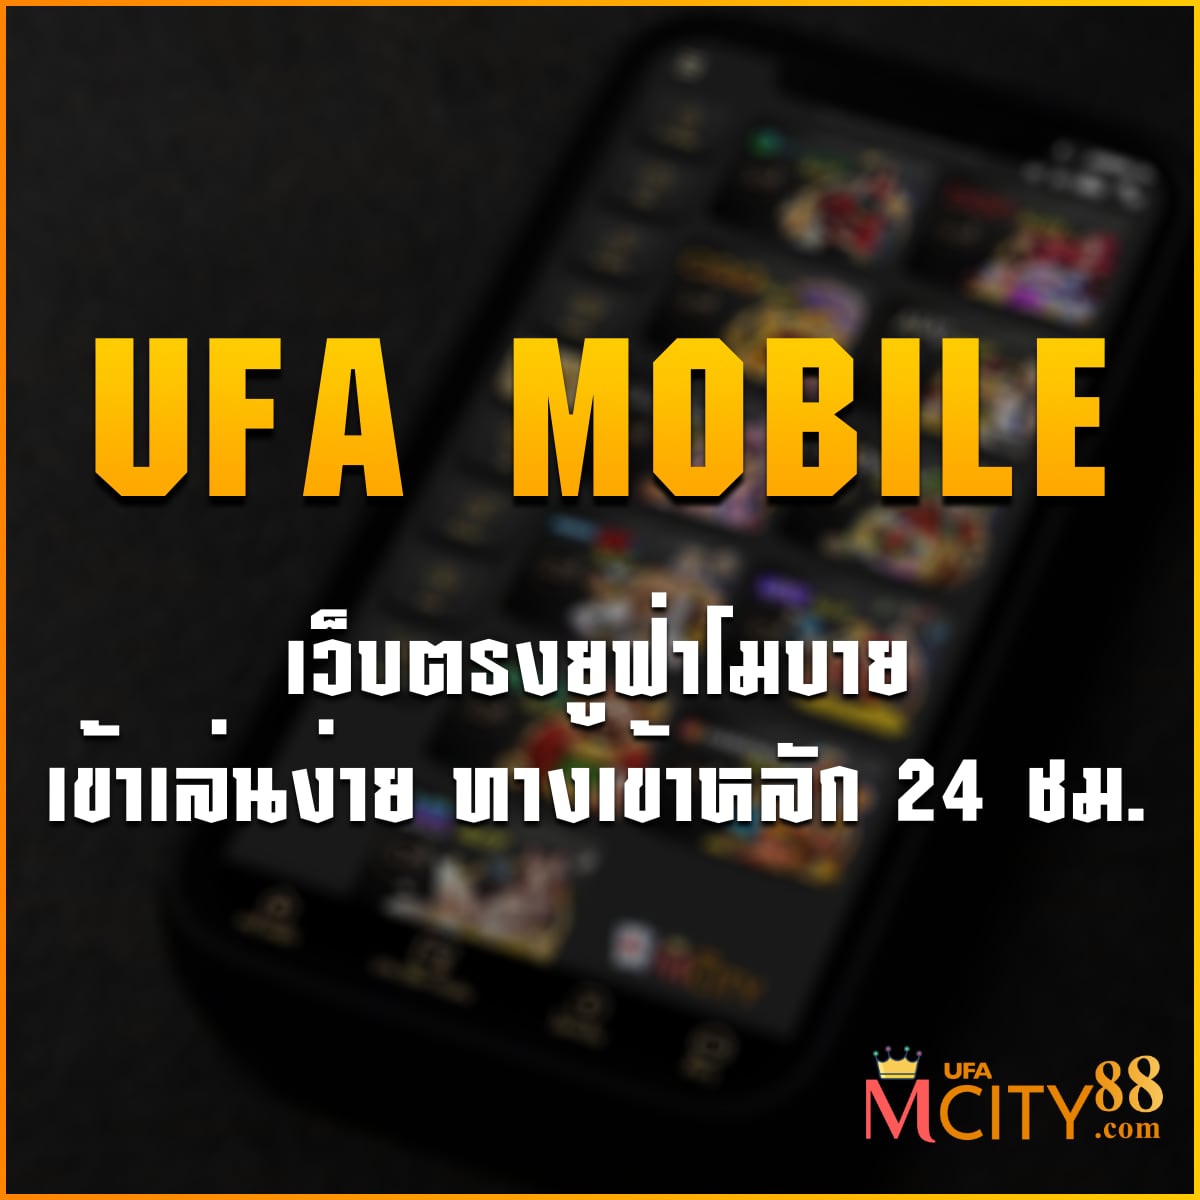 ufa mobile